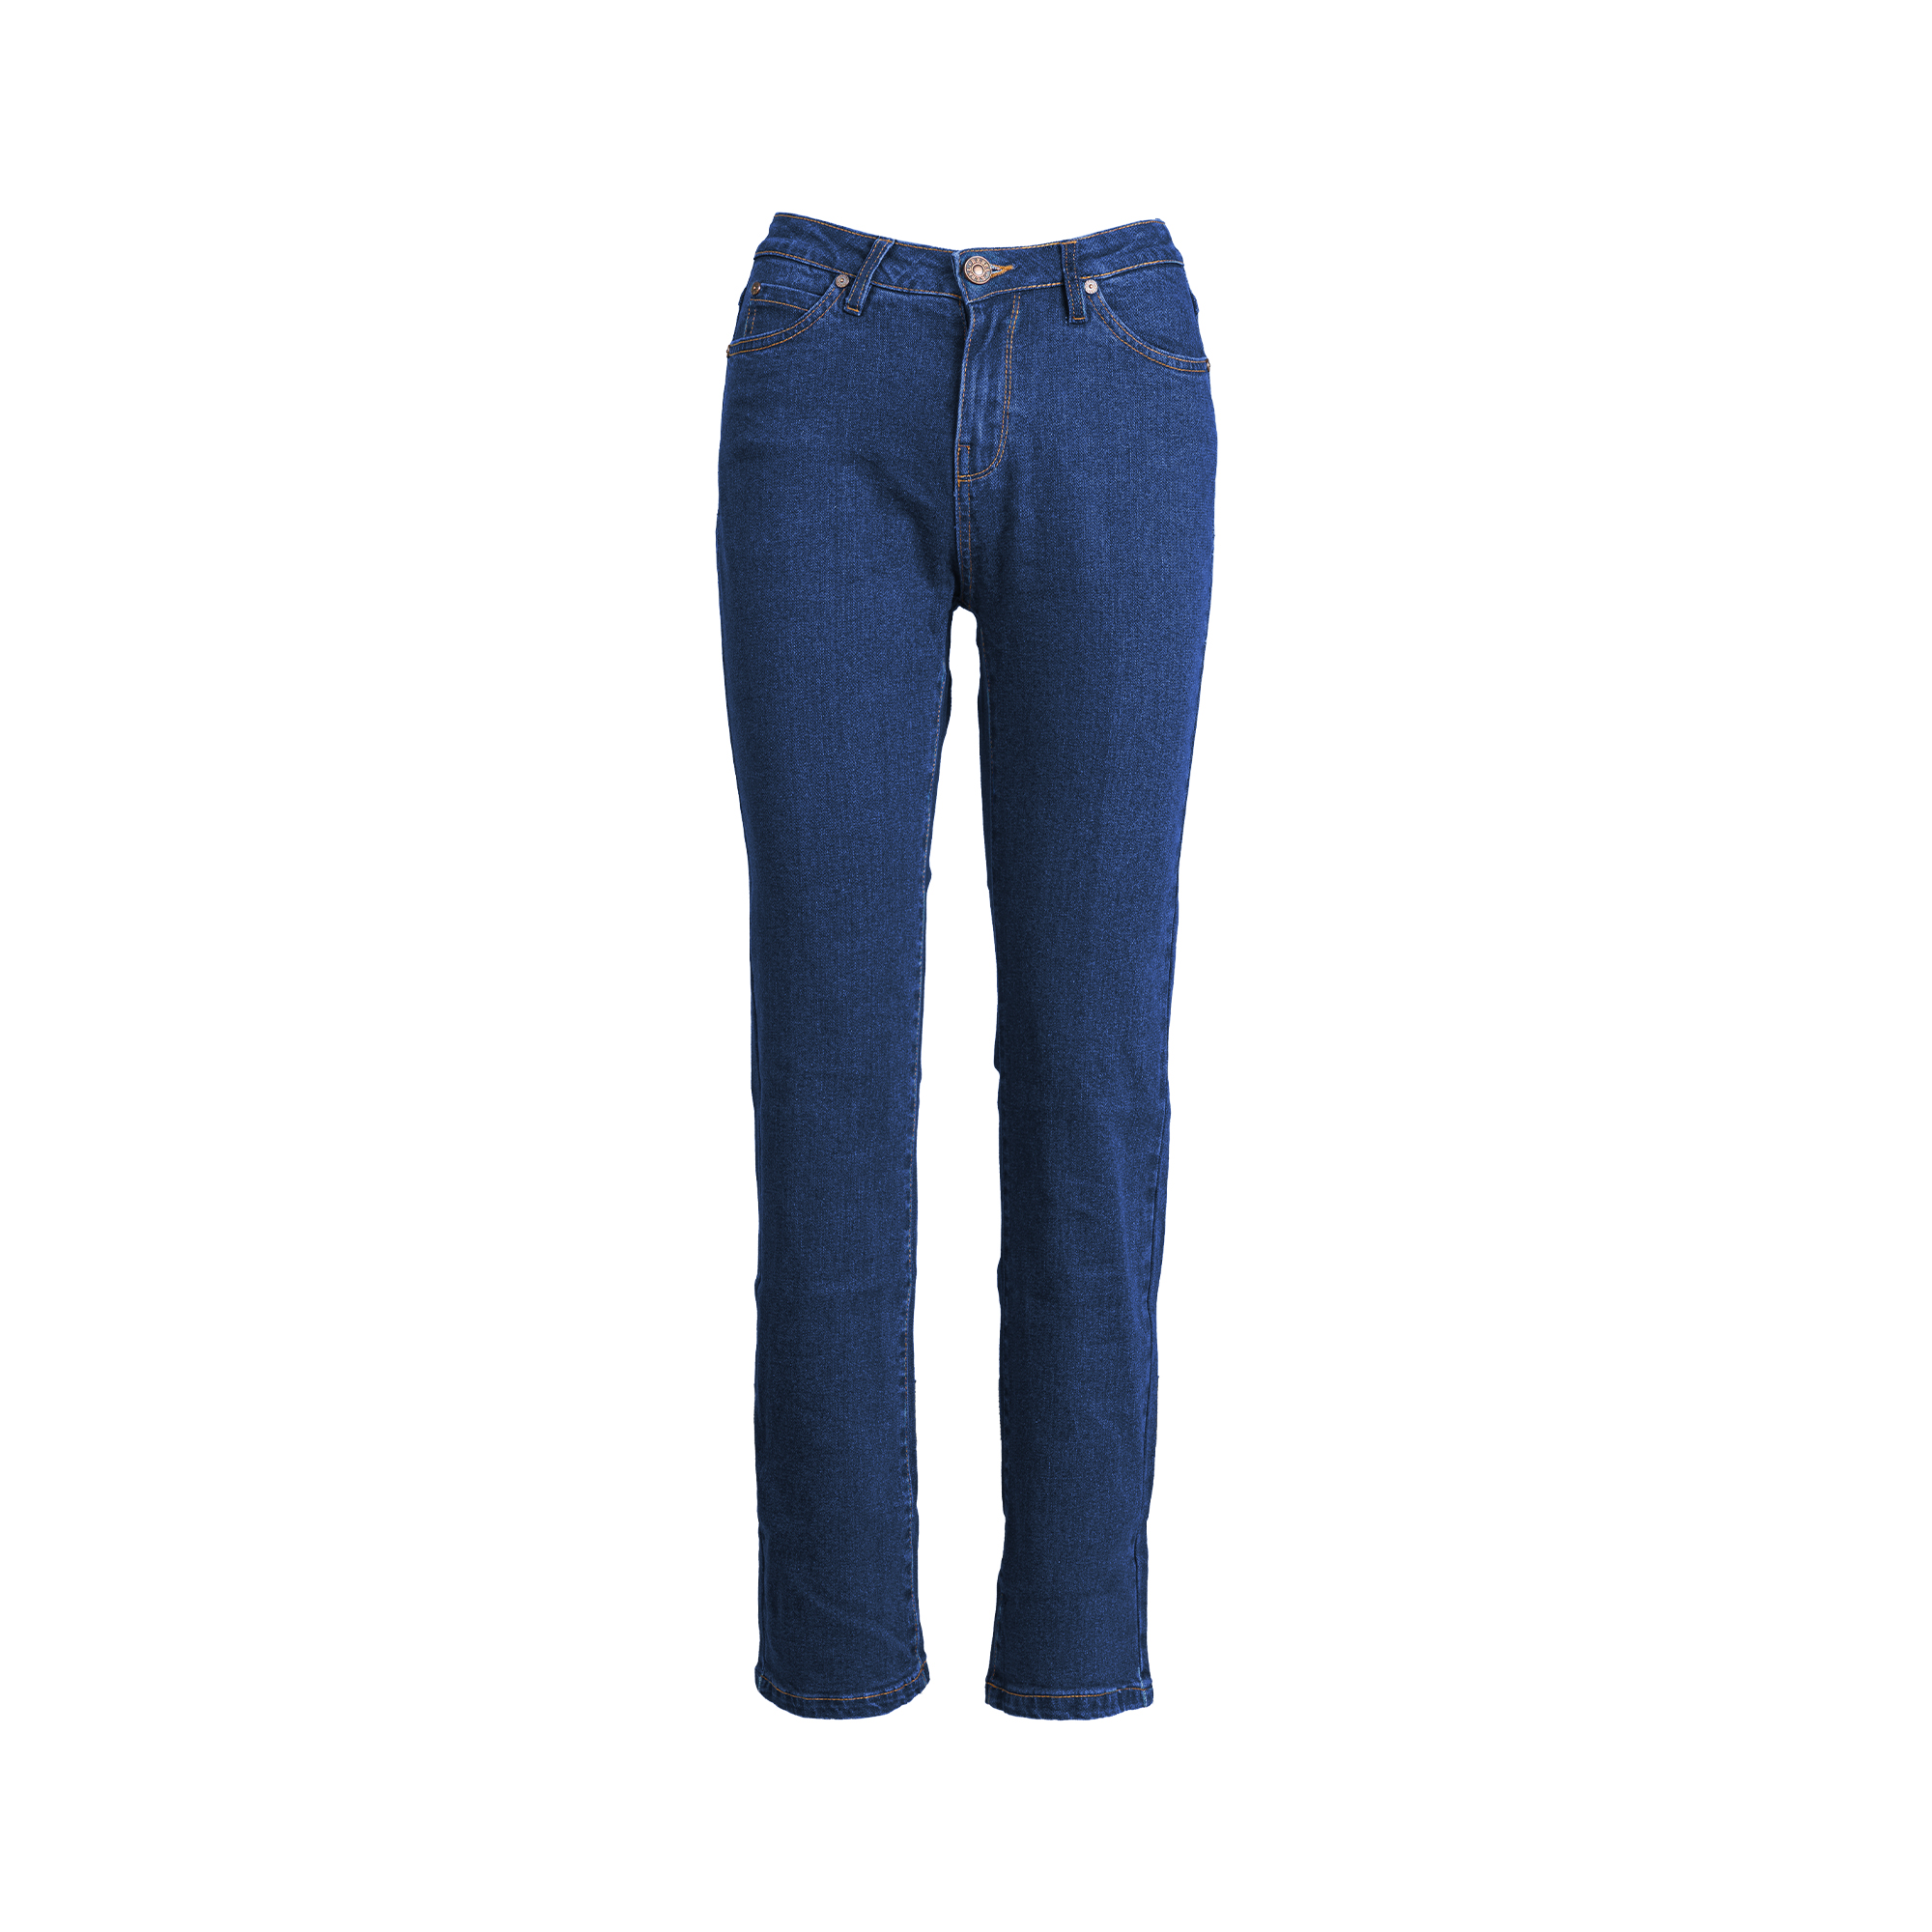 Buy Men Navy Dark Slim Fit Jeans Online - 698907 | Louis Philippe